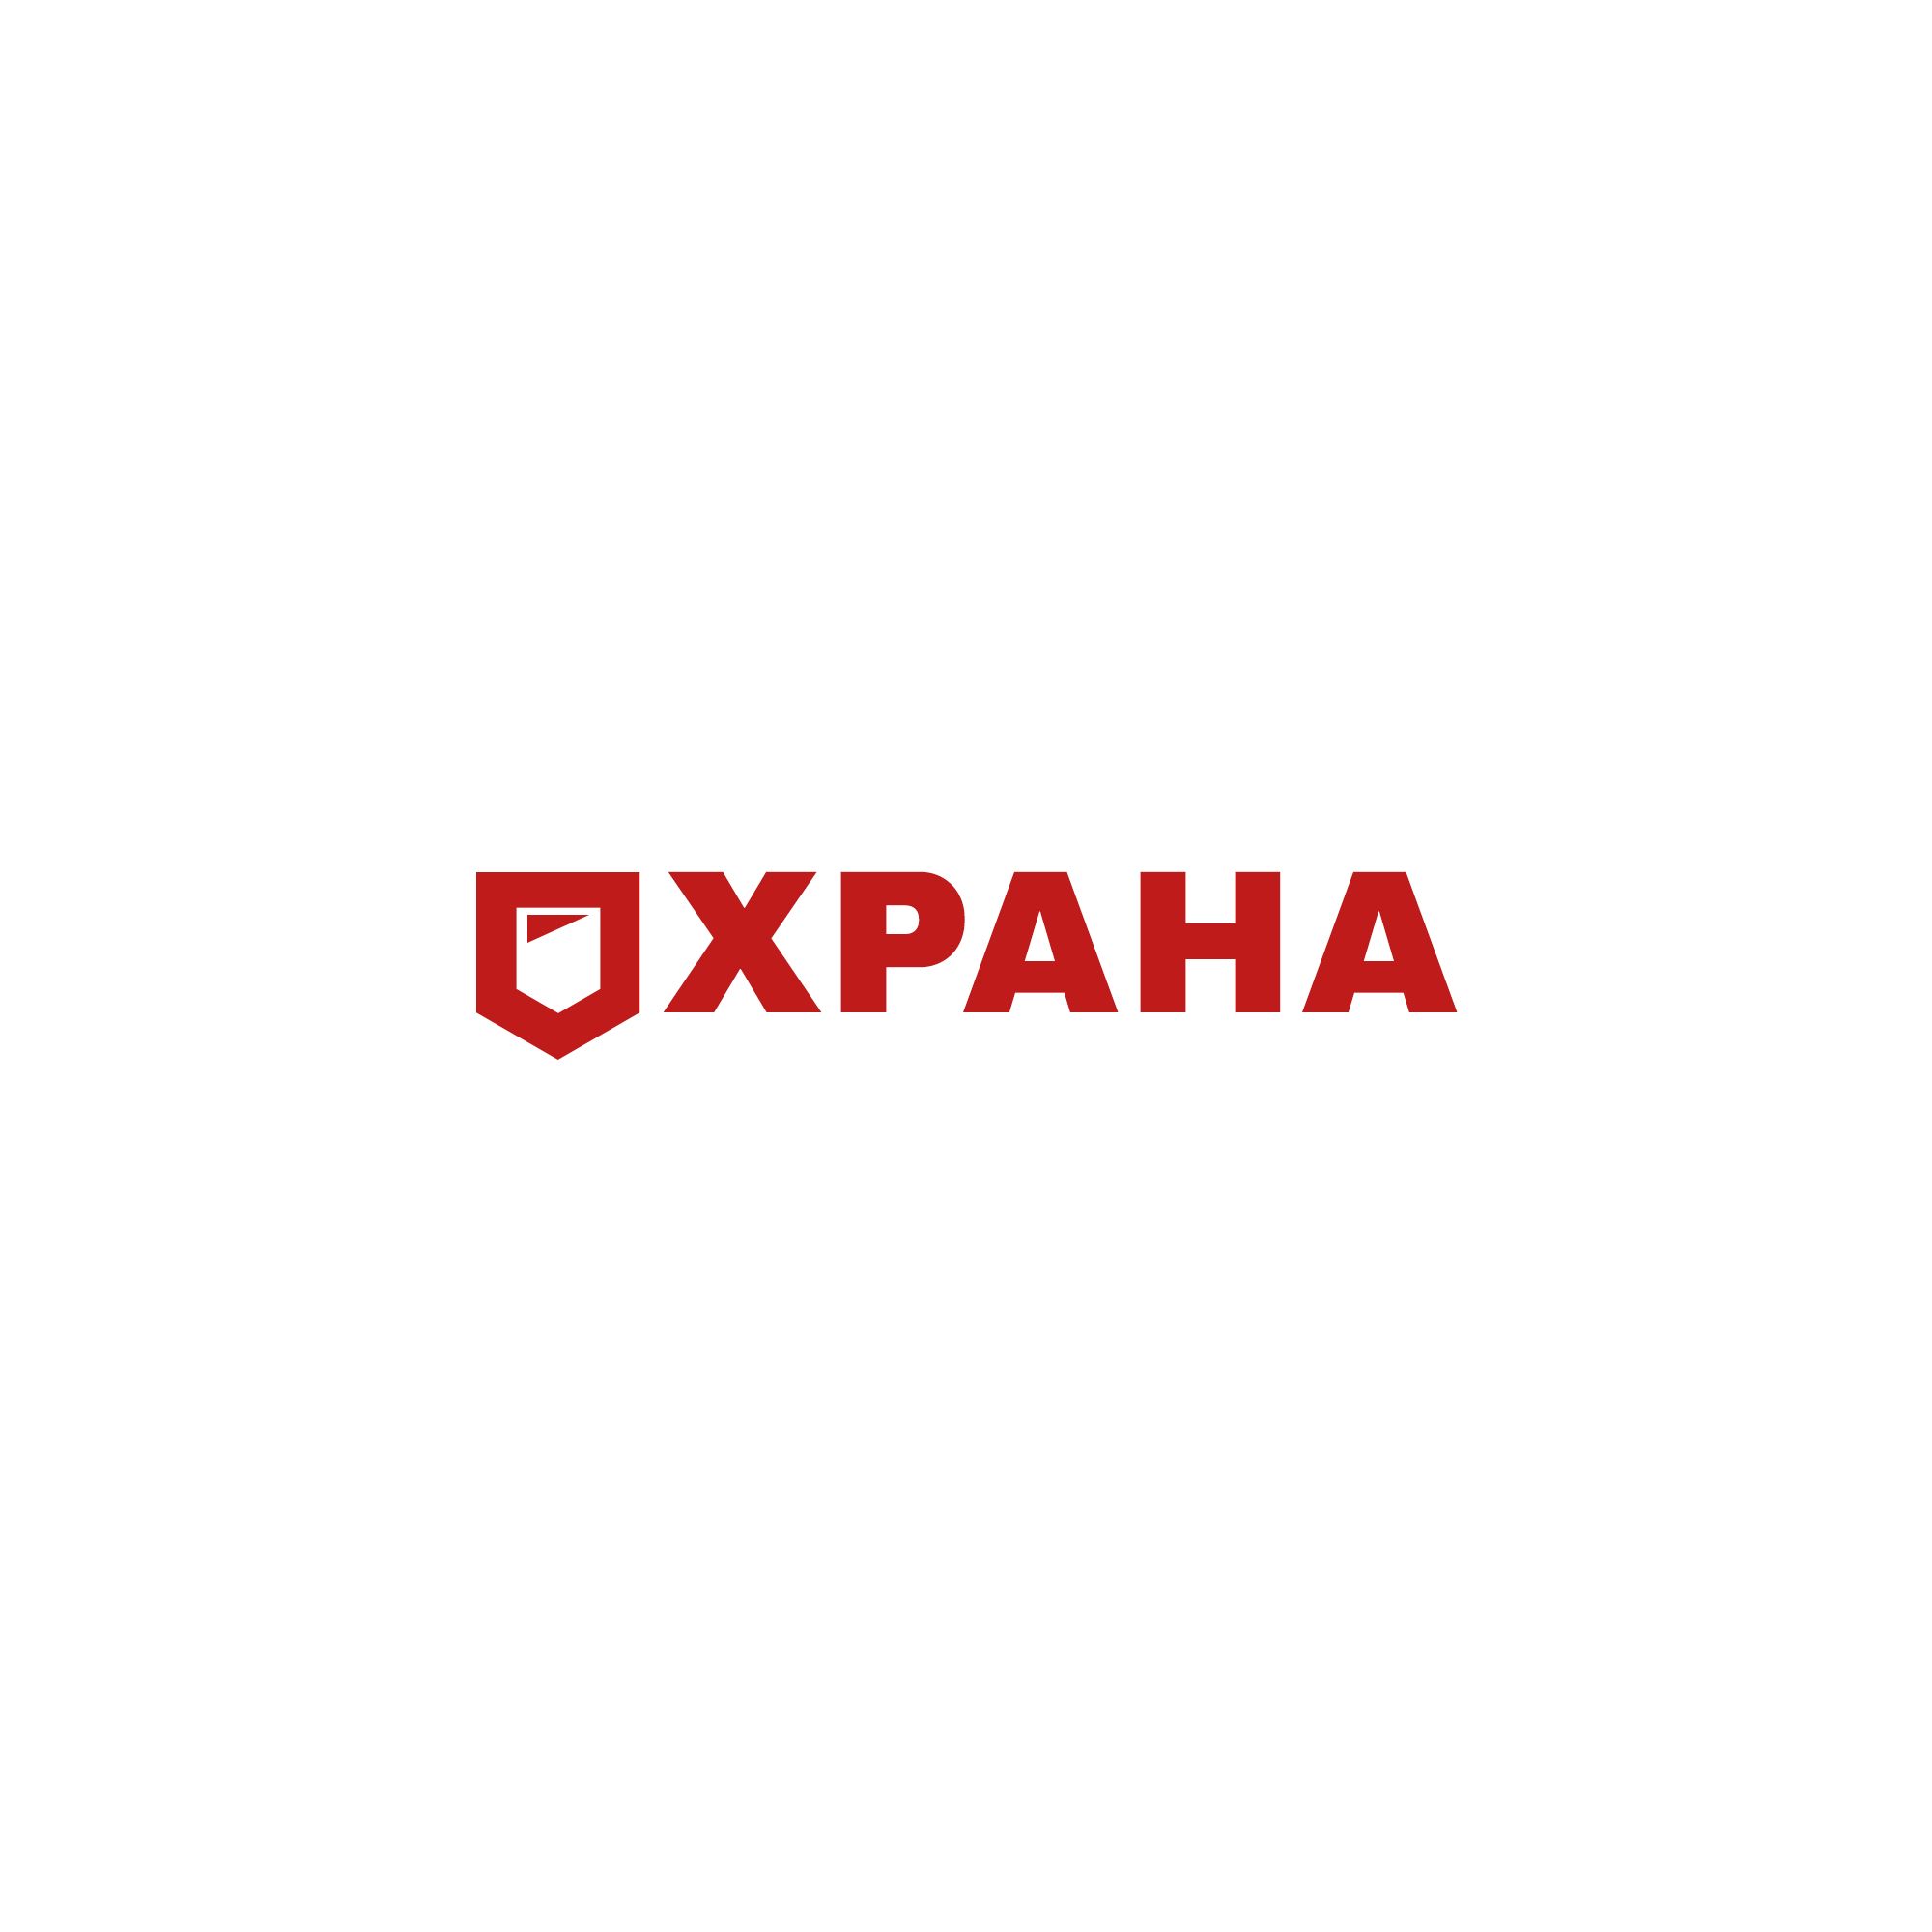 Логотип для группа компаний ОХРАНА - дизайнер weste32